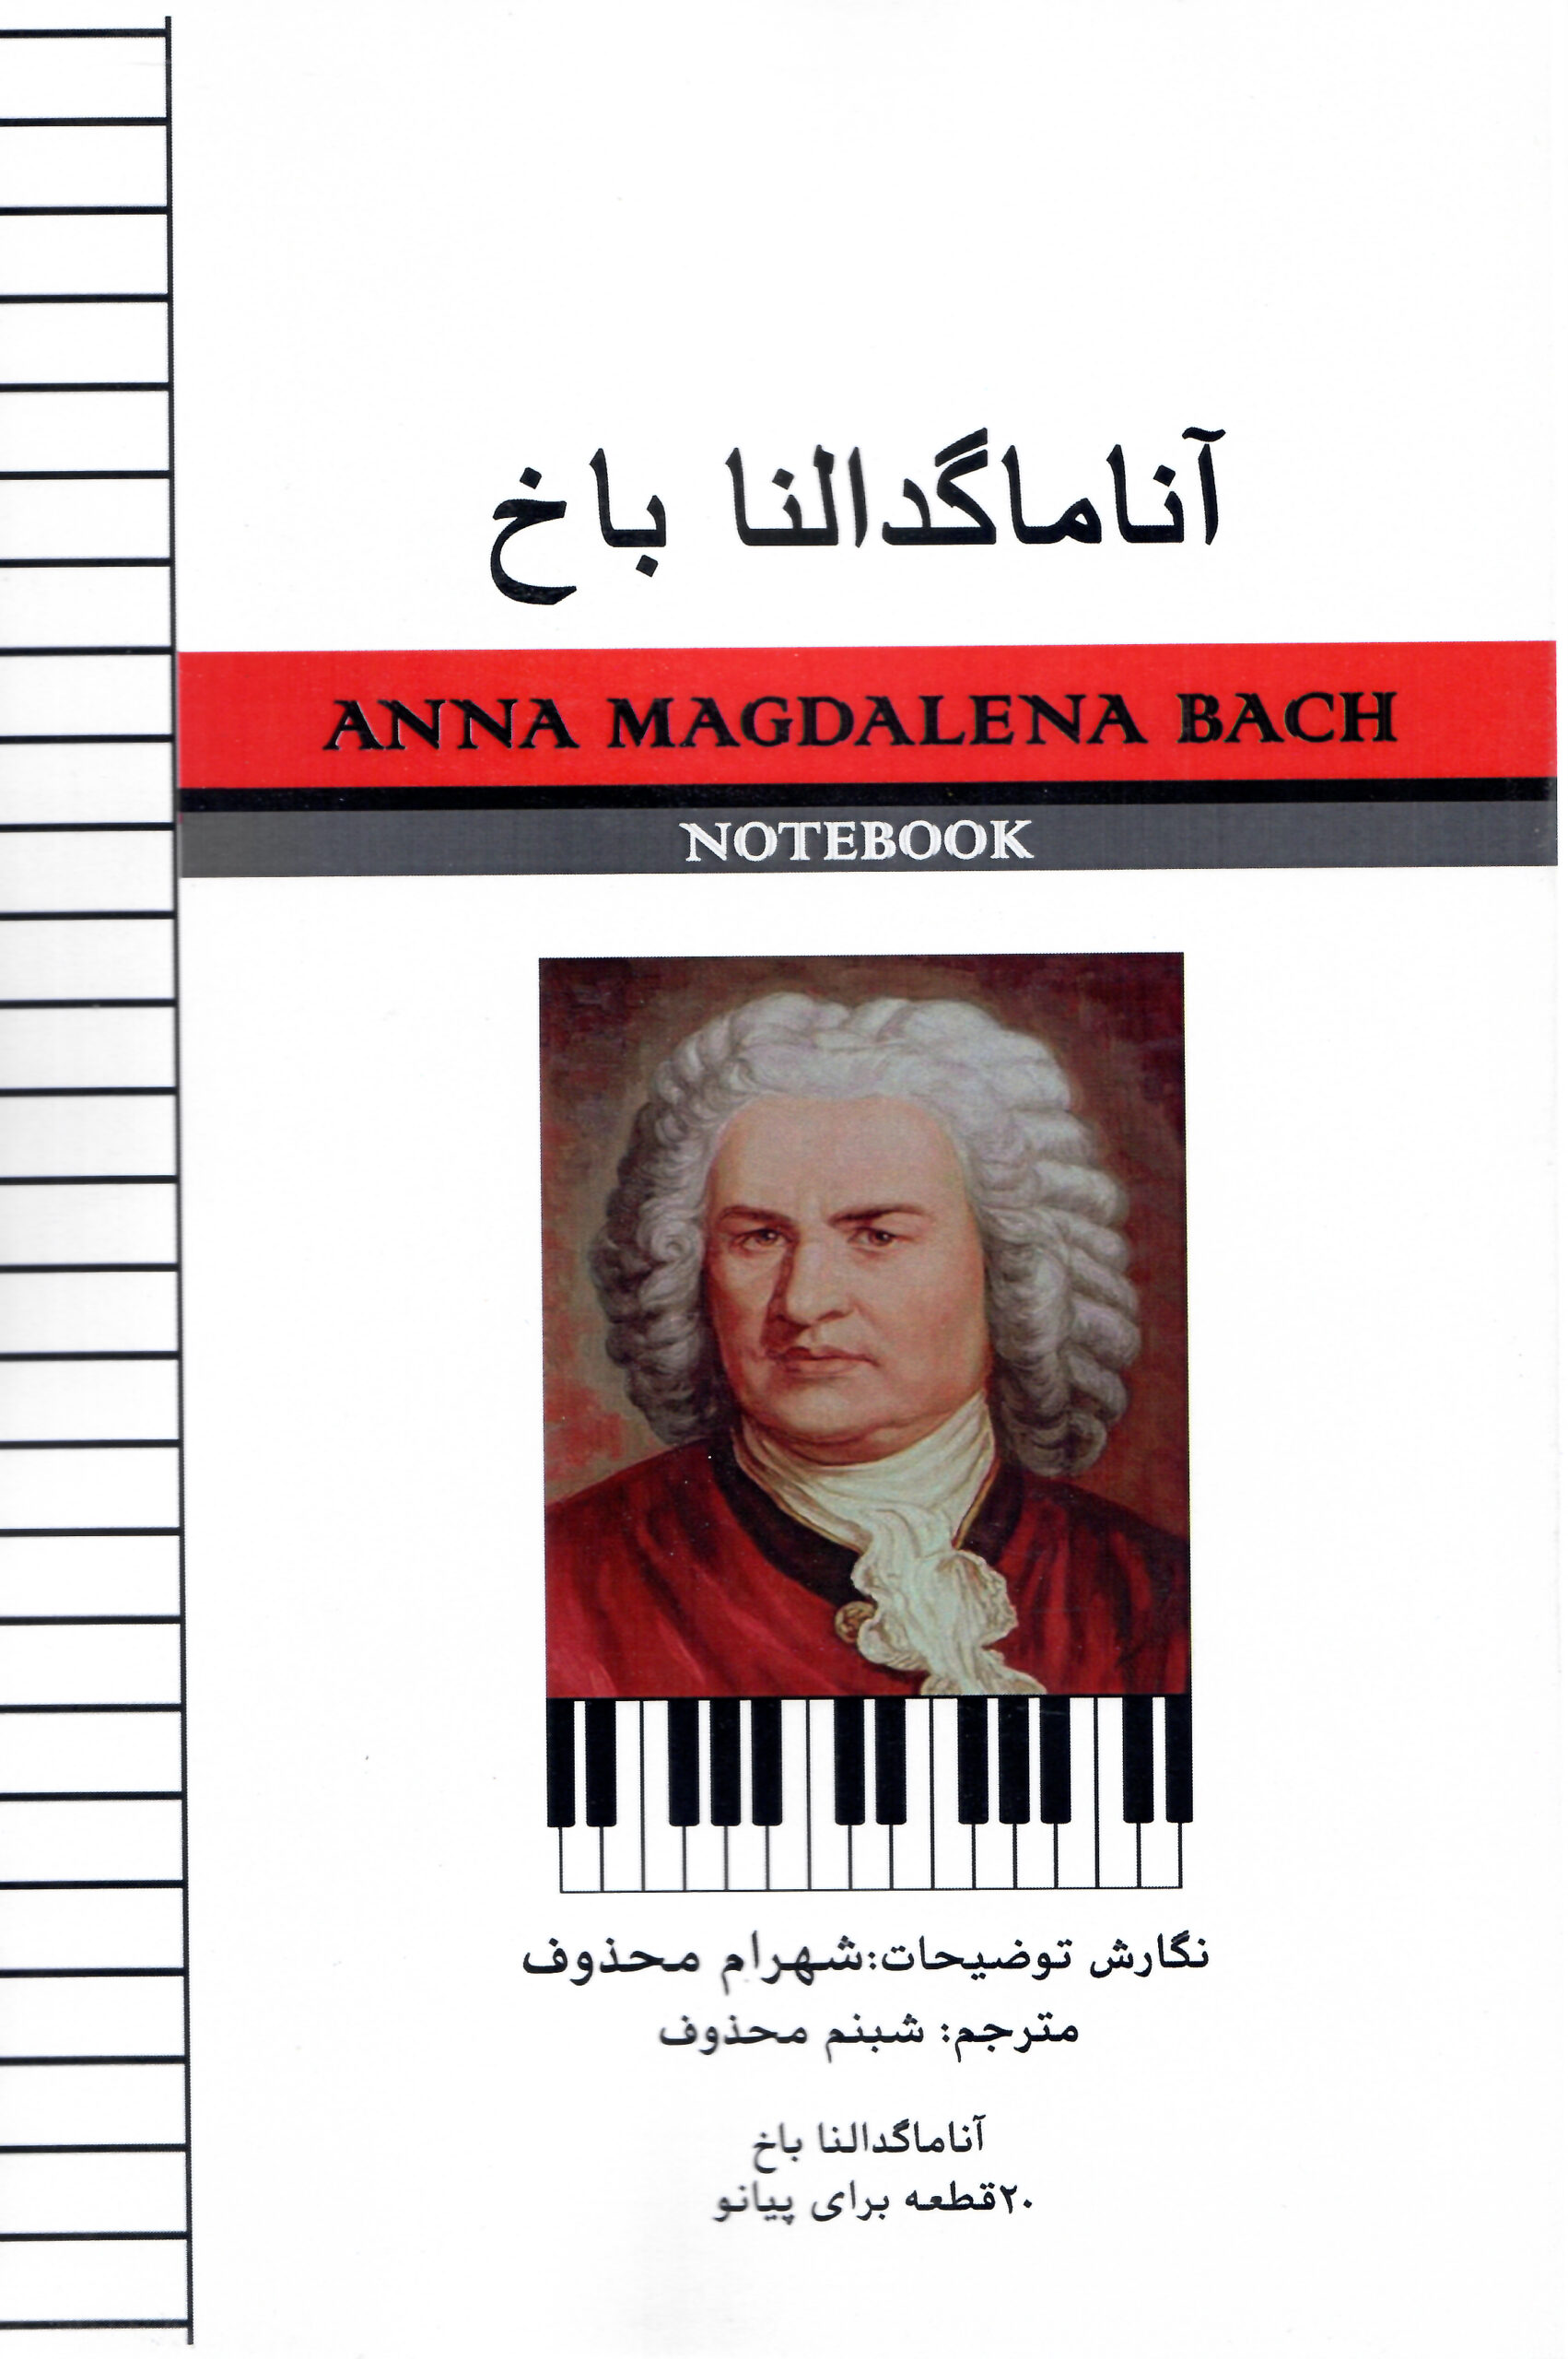 آناماگدالنا باخ 20 قطعه برای پیانو - نگارش توضیحات: شهرام محذوف- مترجم: شبنم محذوف